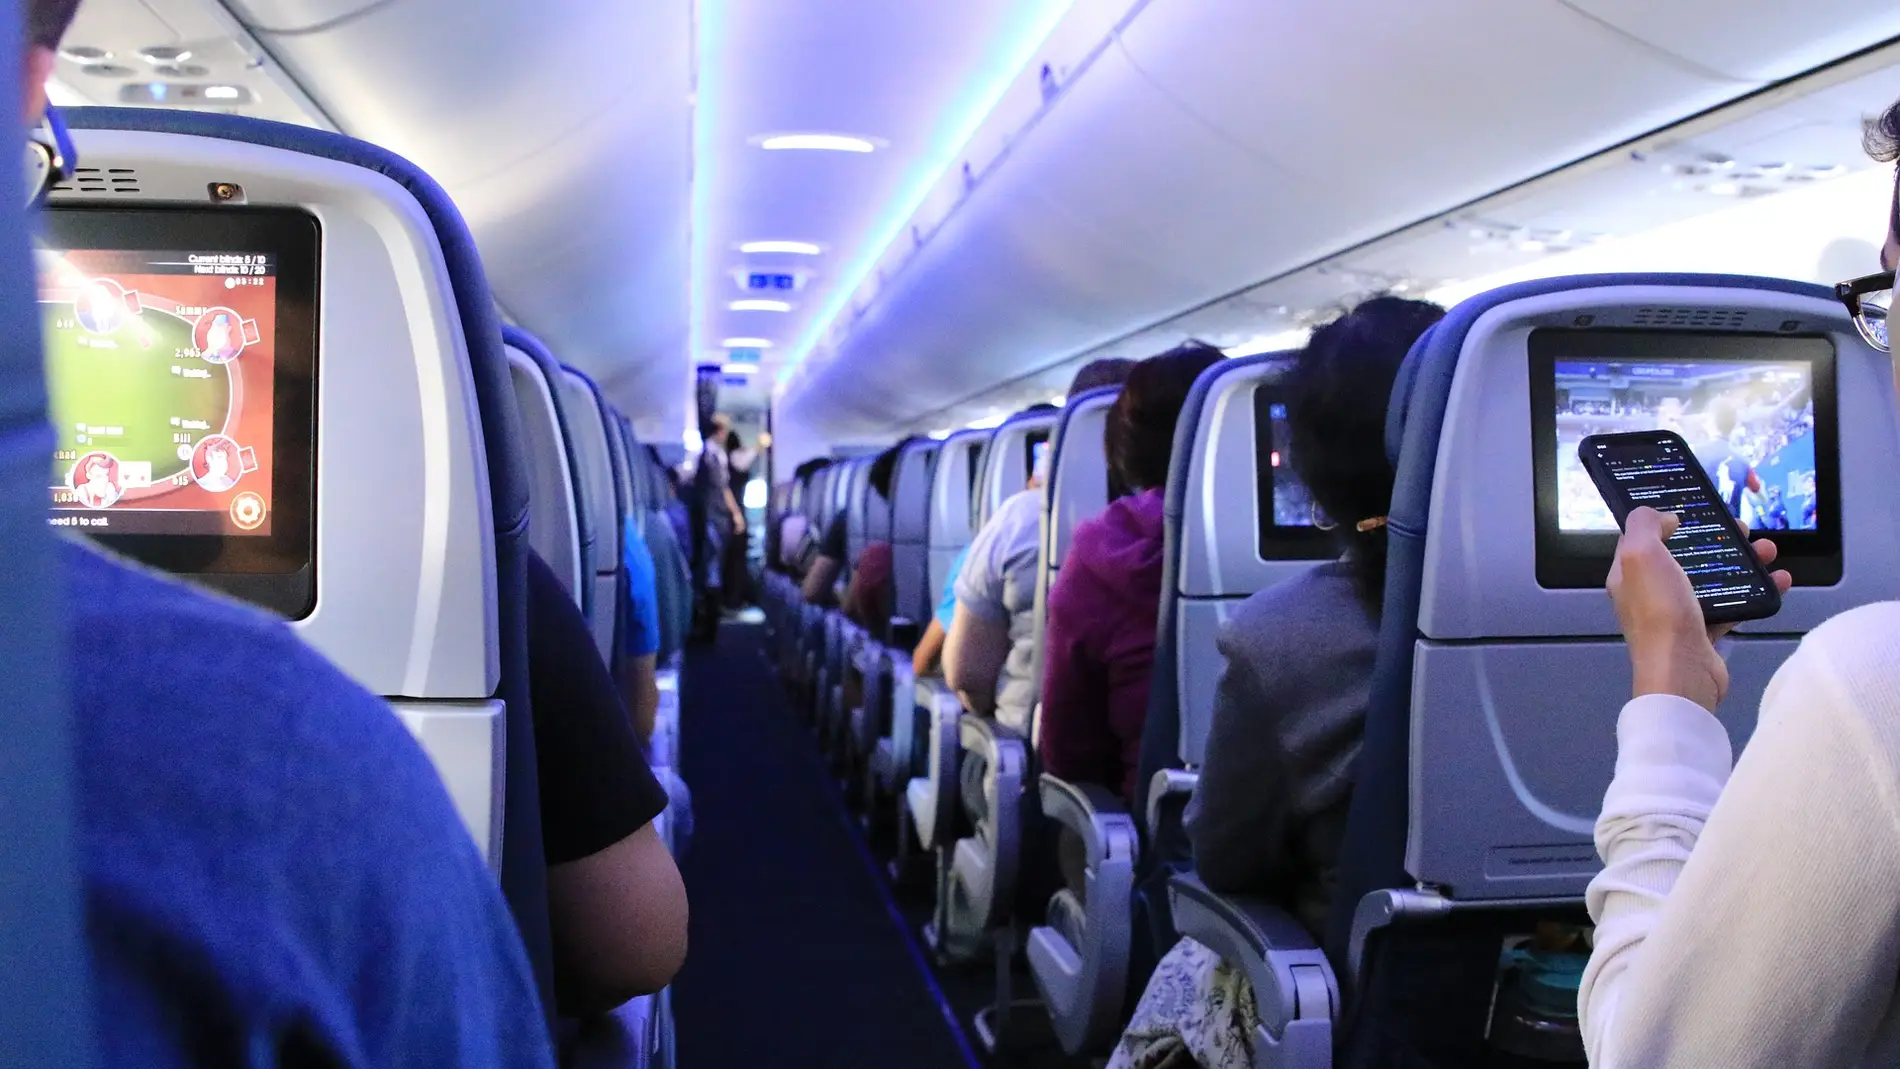 Los pasajeros podrán dejar de usar el 'modo avión': la UE permitirá activar el 5G en los aviones